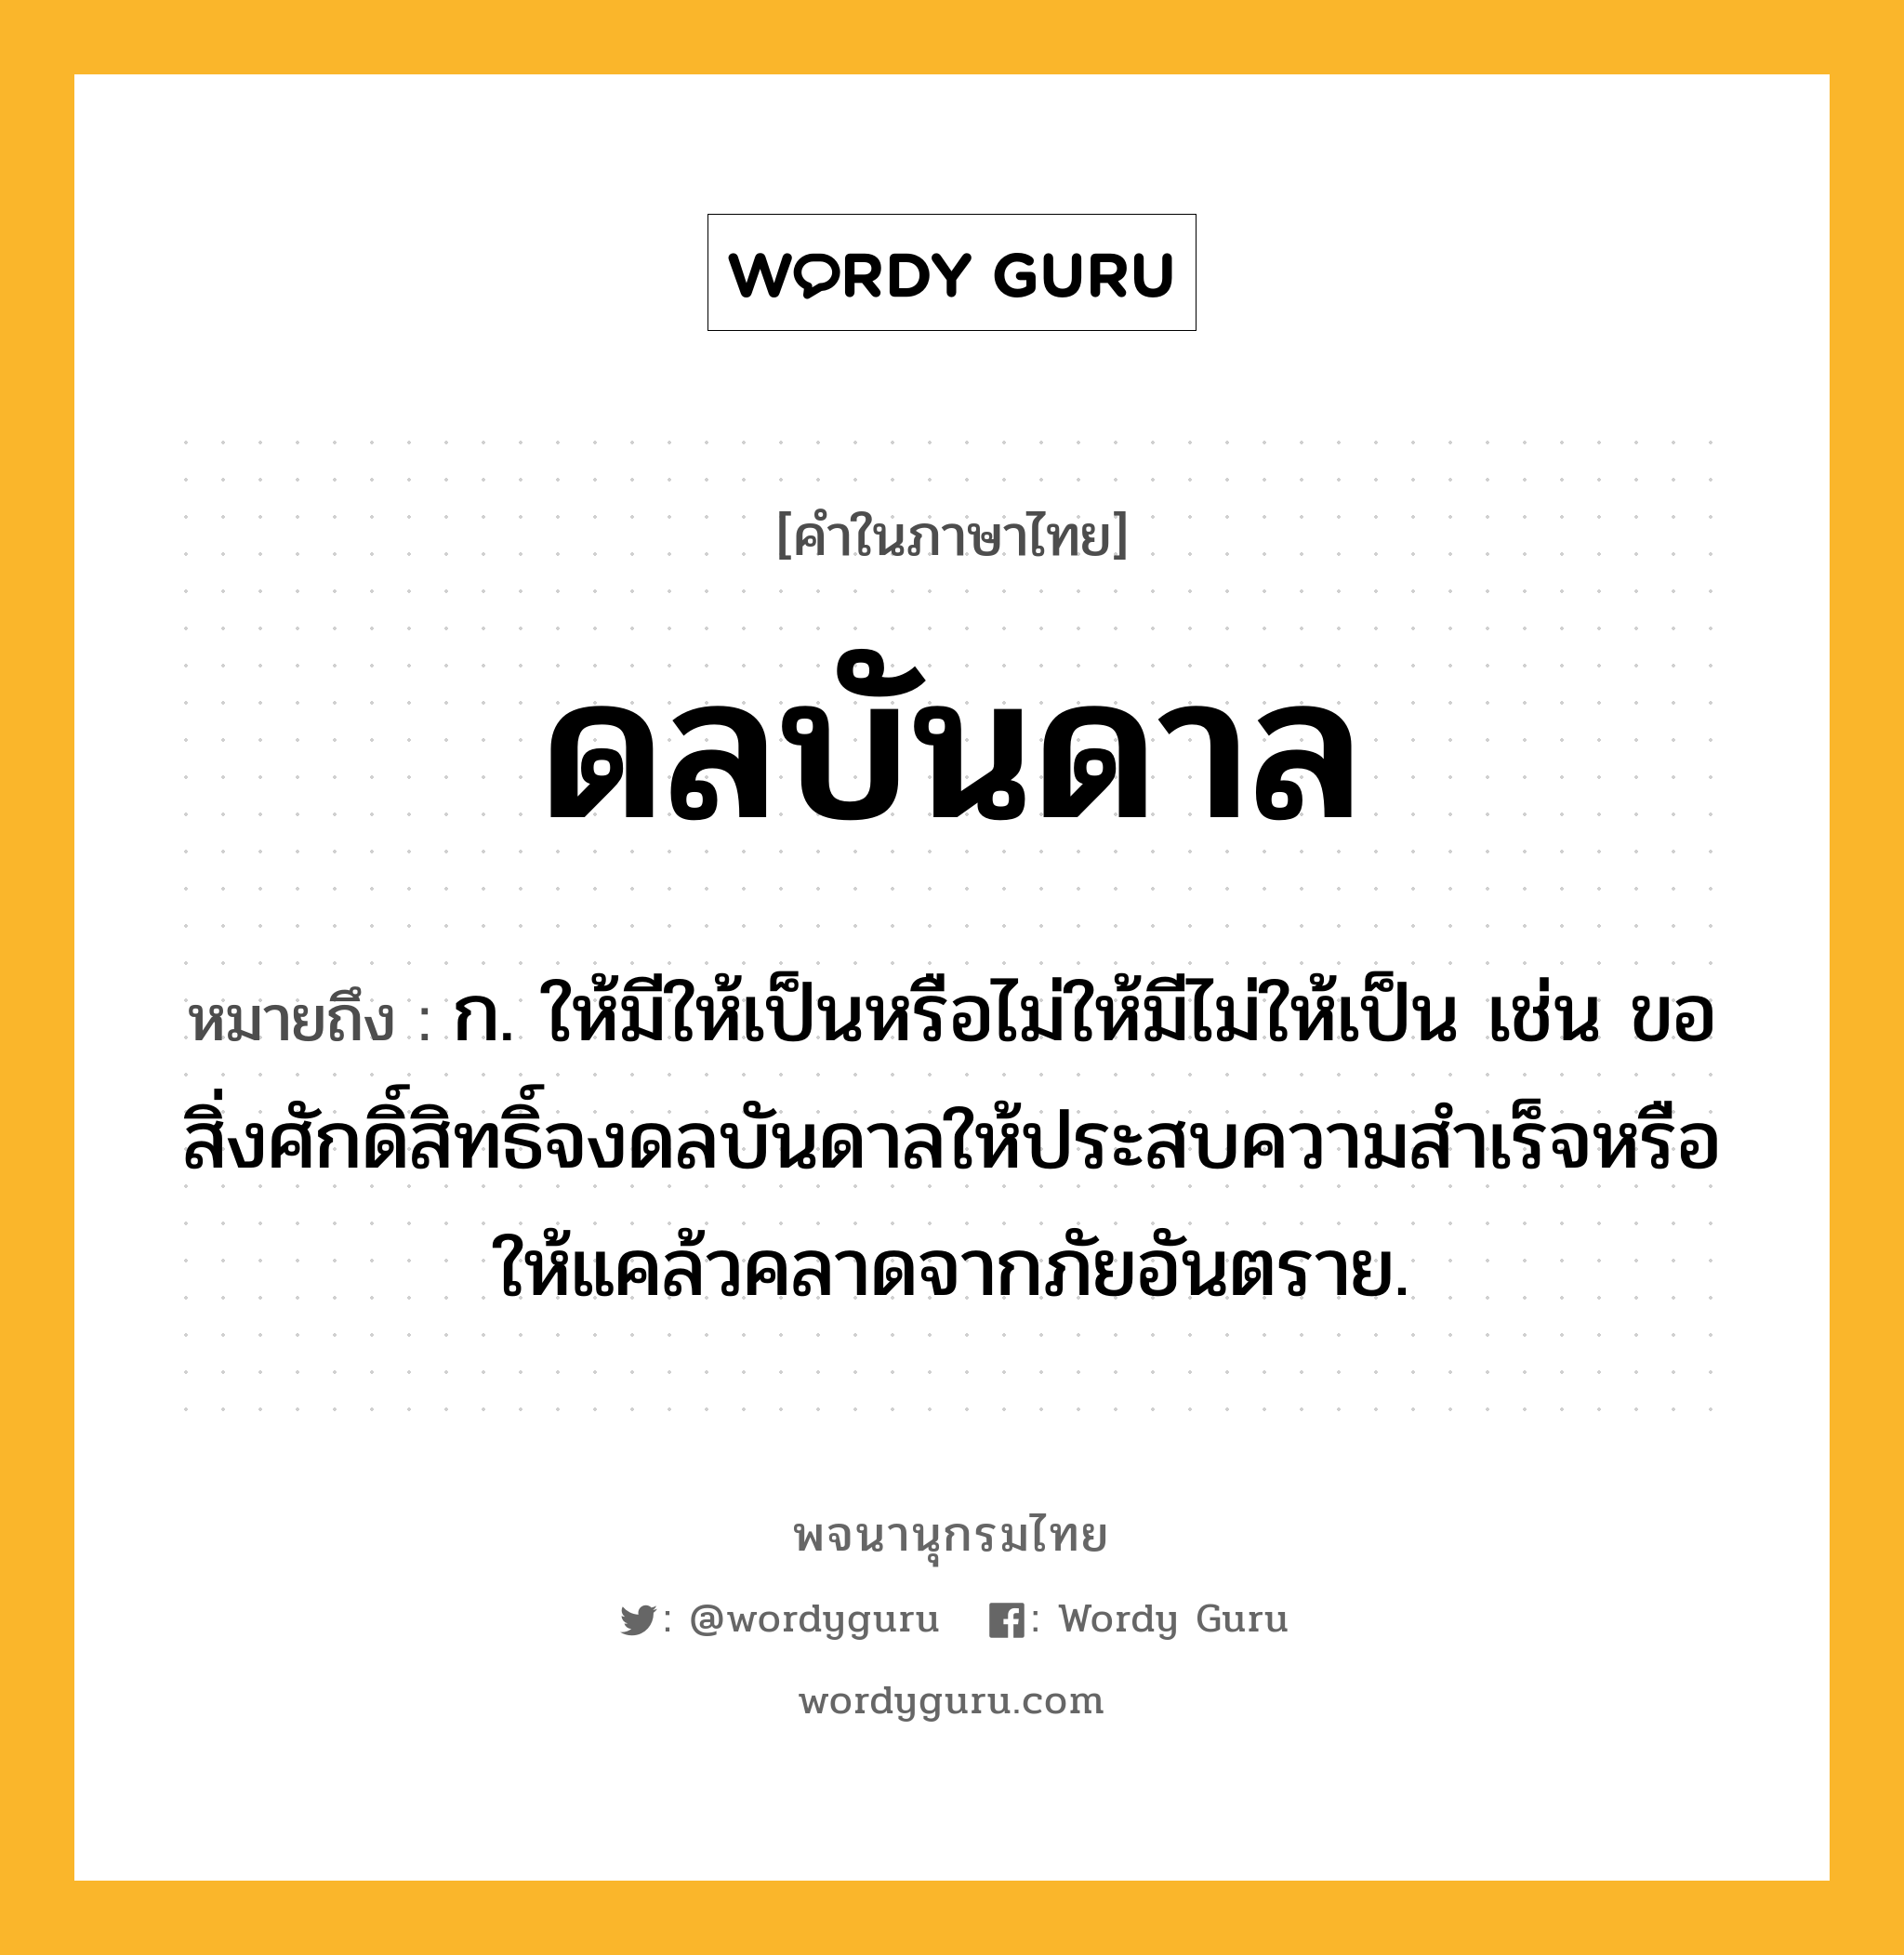 ดลบันดาล ความหมาย หมายถึงอะไร?, คำในภาษาไทย ดลบันดาล หมายถึง ก. ให้มีให้เป็นหรือไม่ให้มีไม่ให้เป็น เช่น ขอสิ่งศักดิ์สิทธิ์จงดลบันดาลให้ประสบความสําเร็จหรือให้แคล้วคลาดจากภัยอันตราย.